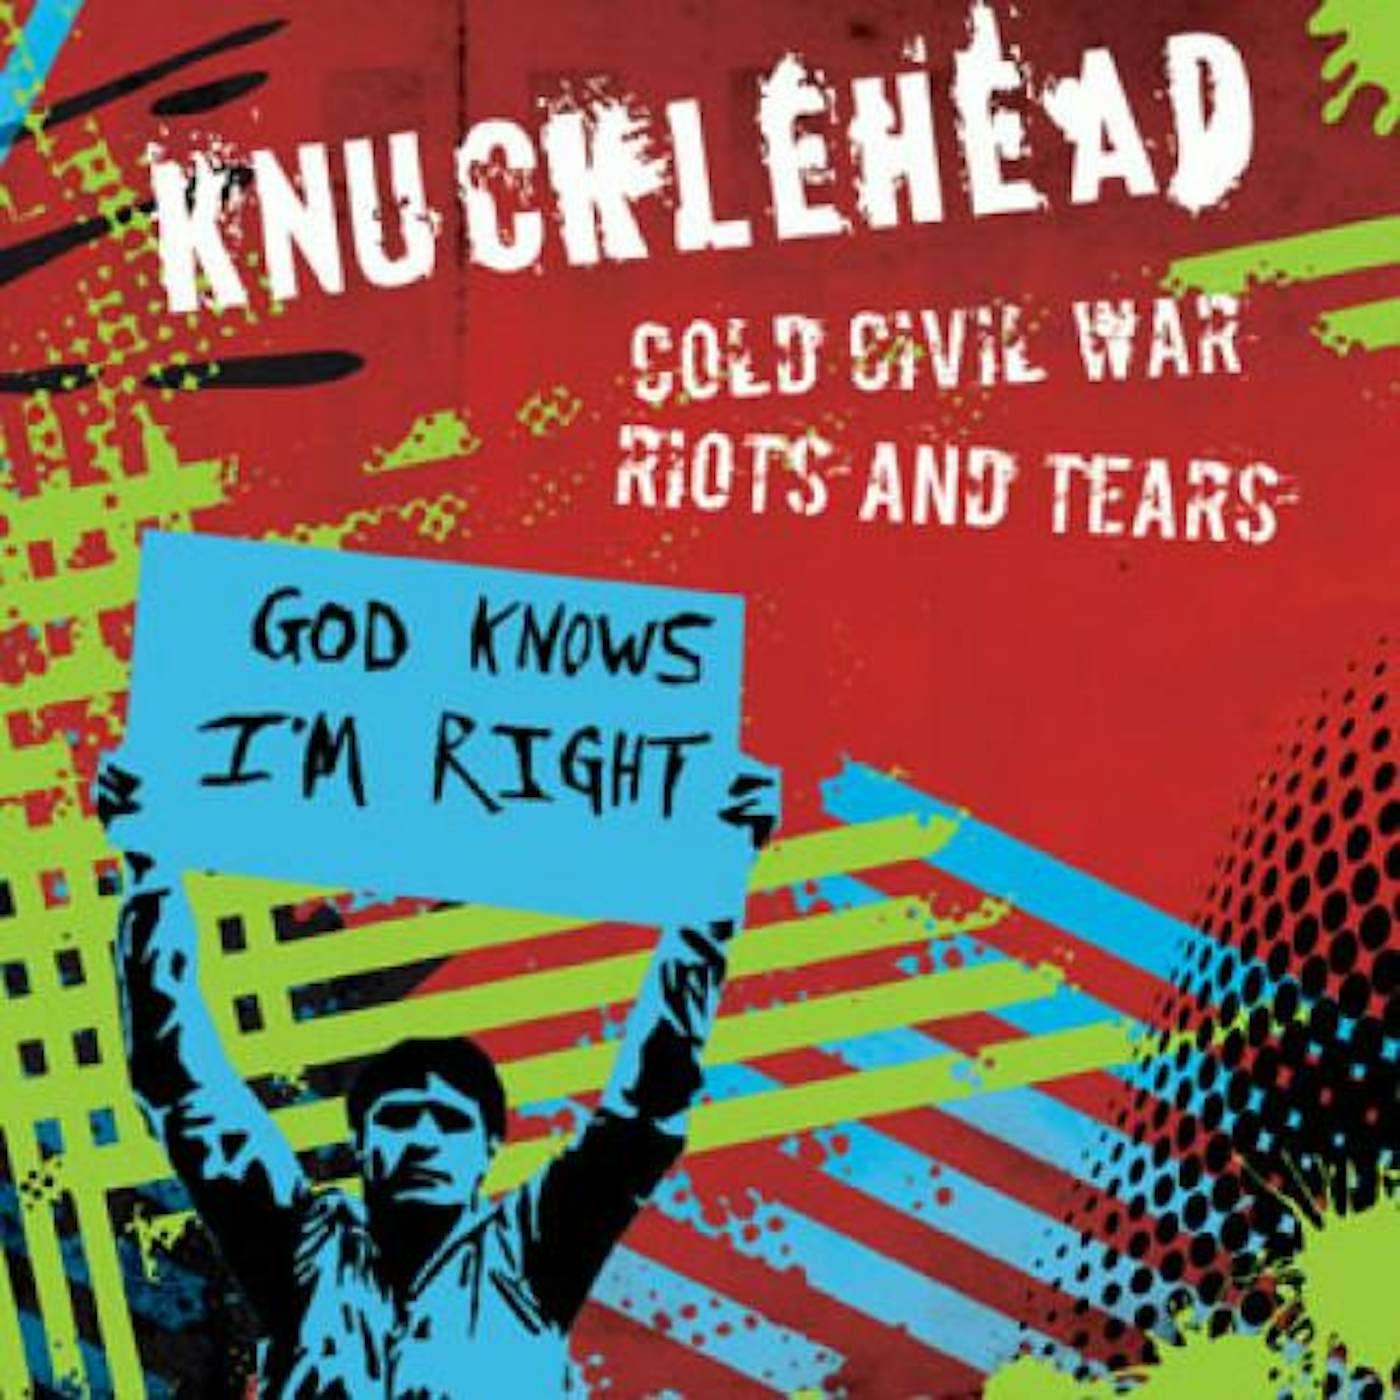 Knucklhead COLD CIVIL WAR / RIOTS & TEARS Vinyl Record